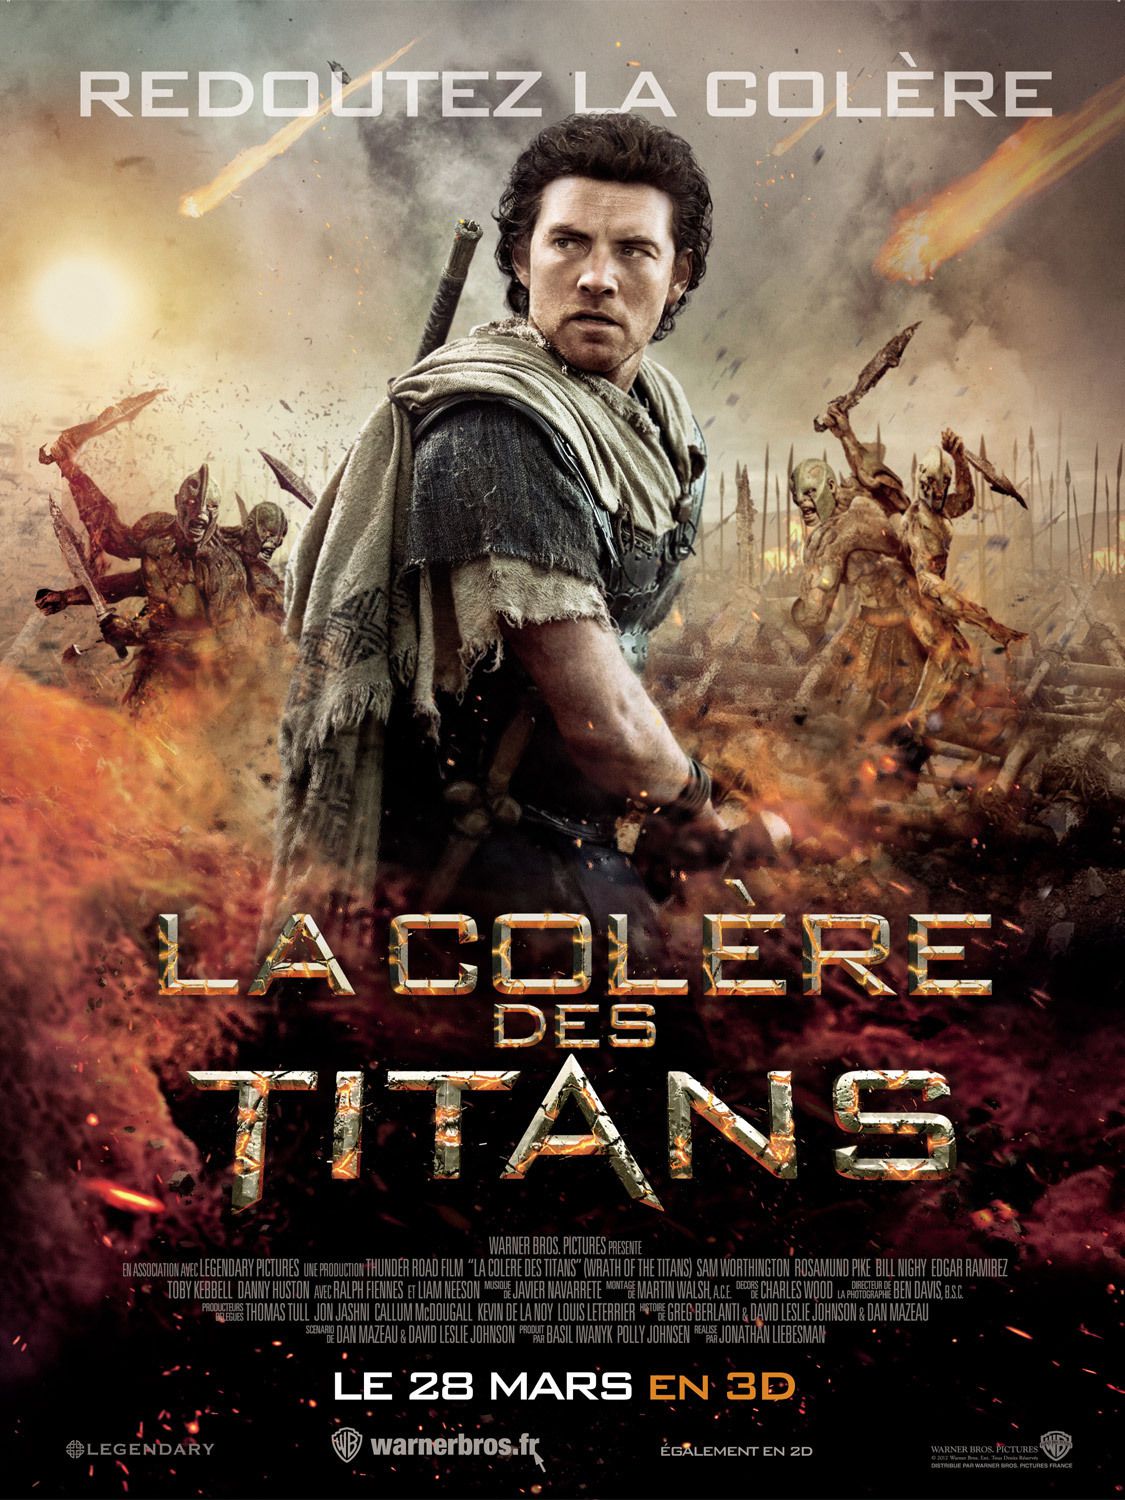 La Colère des Titans - Film (2012) streaming VF gratuit complet